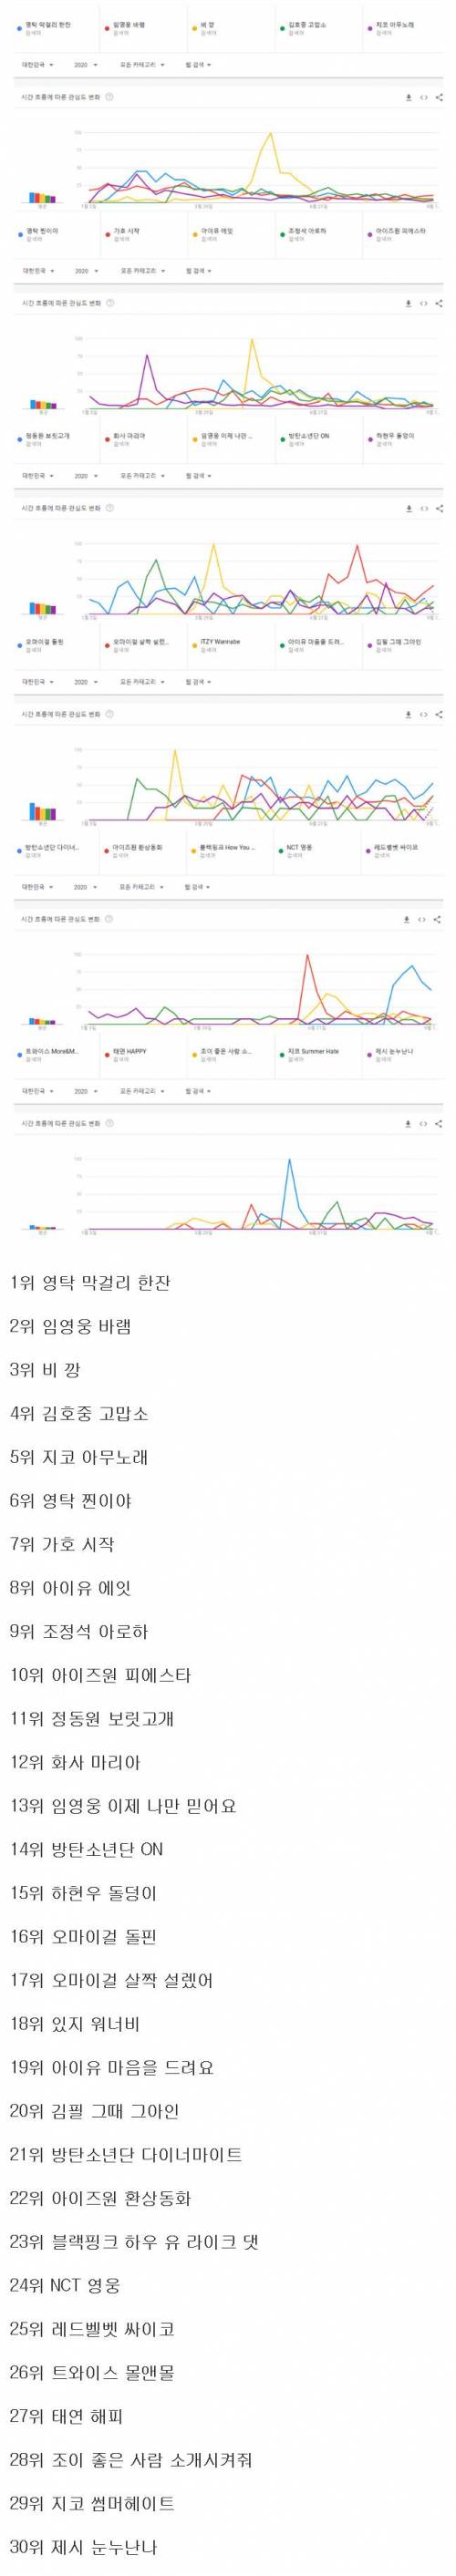 2020년 한국에서 가장 많이 검색된 노래 순위.jpg